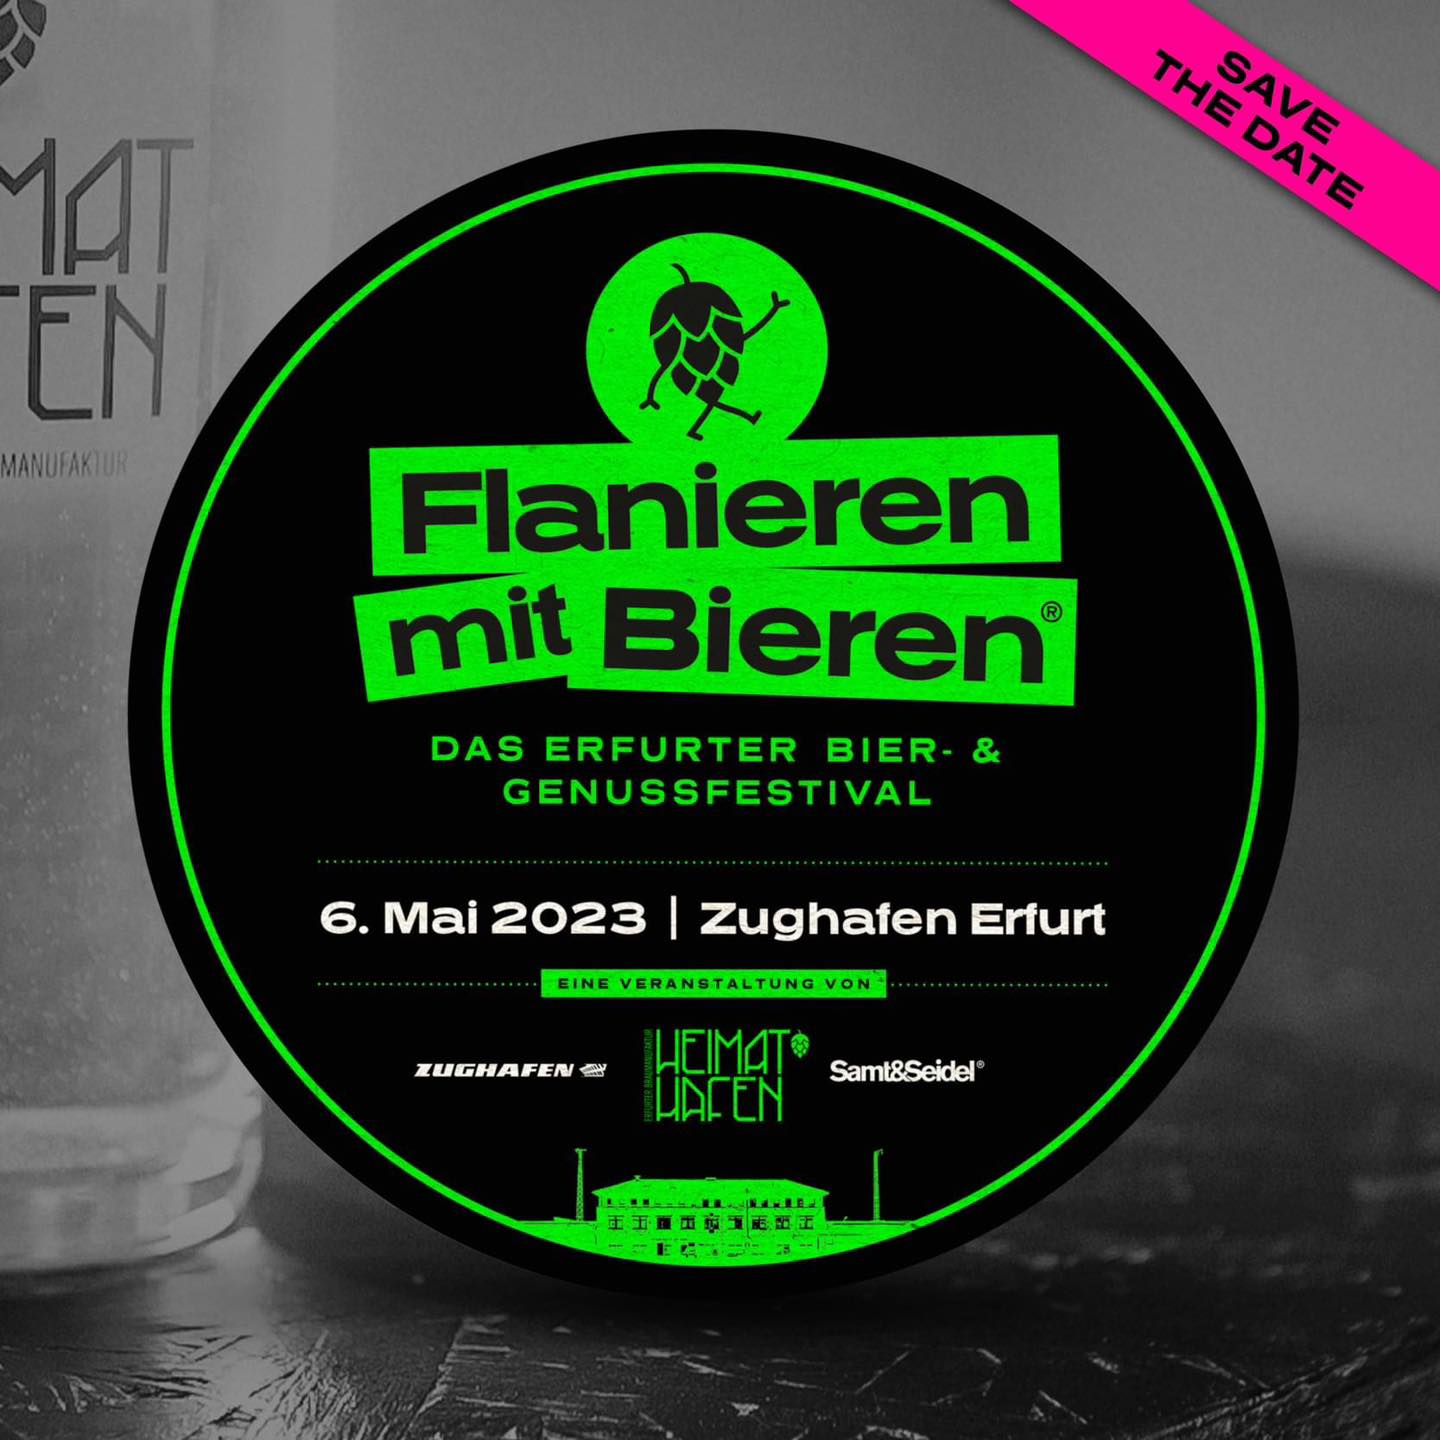 Flanieren mit Bieren® - Das Erfurter Bier- & Genussfestival